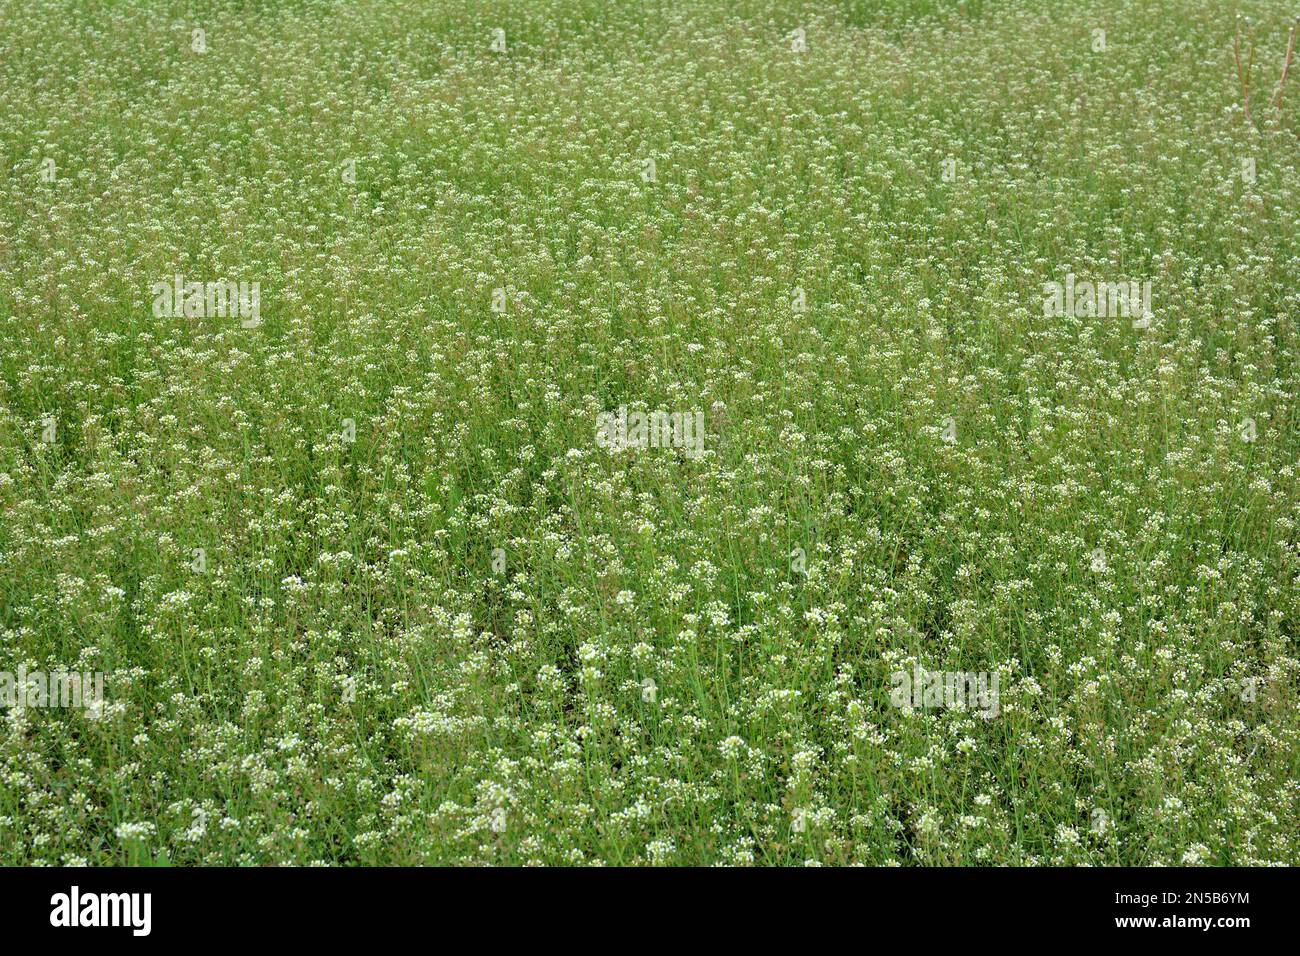 In nature, the field grow Capsella bursa-pastoris Stock Photo